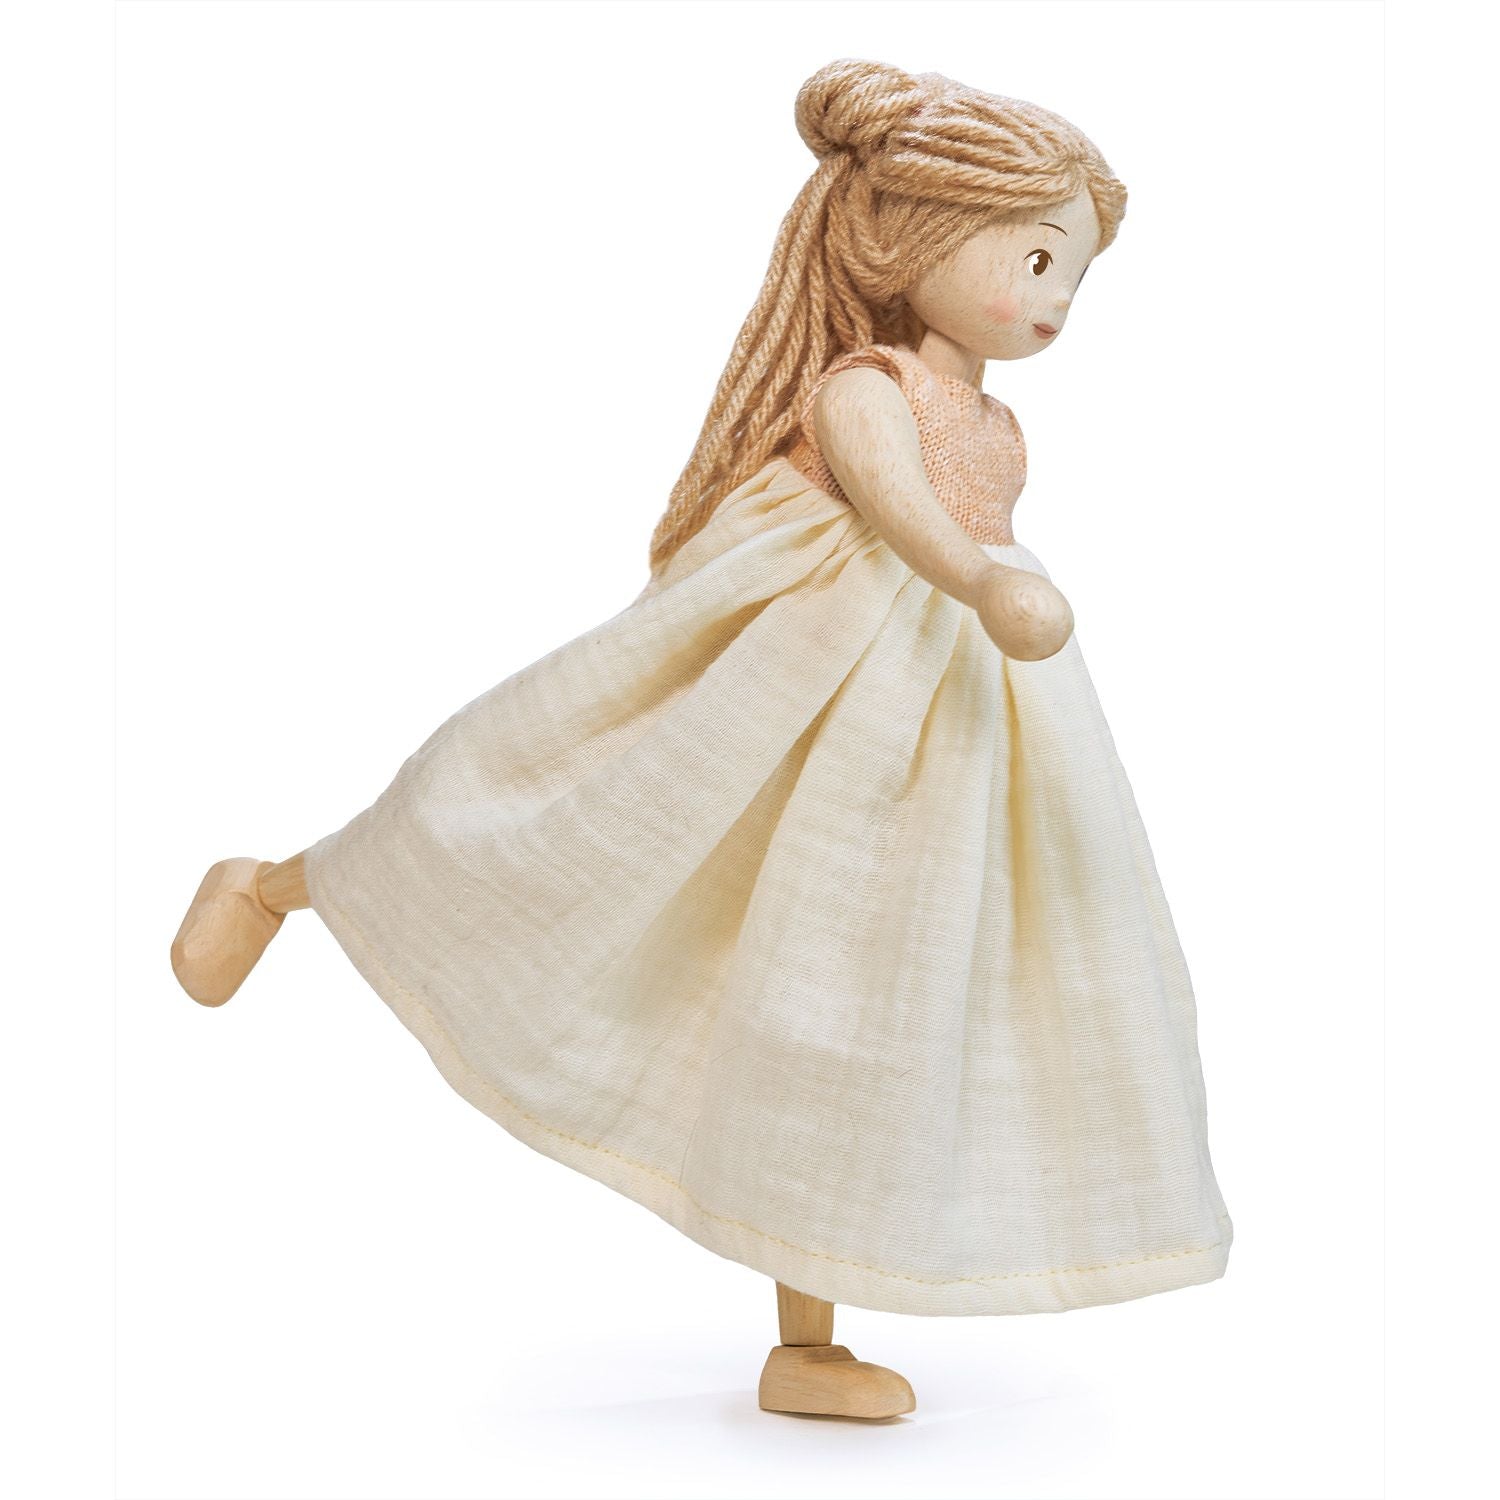 Tender Leaf Toys Ferne Wooden Doll